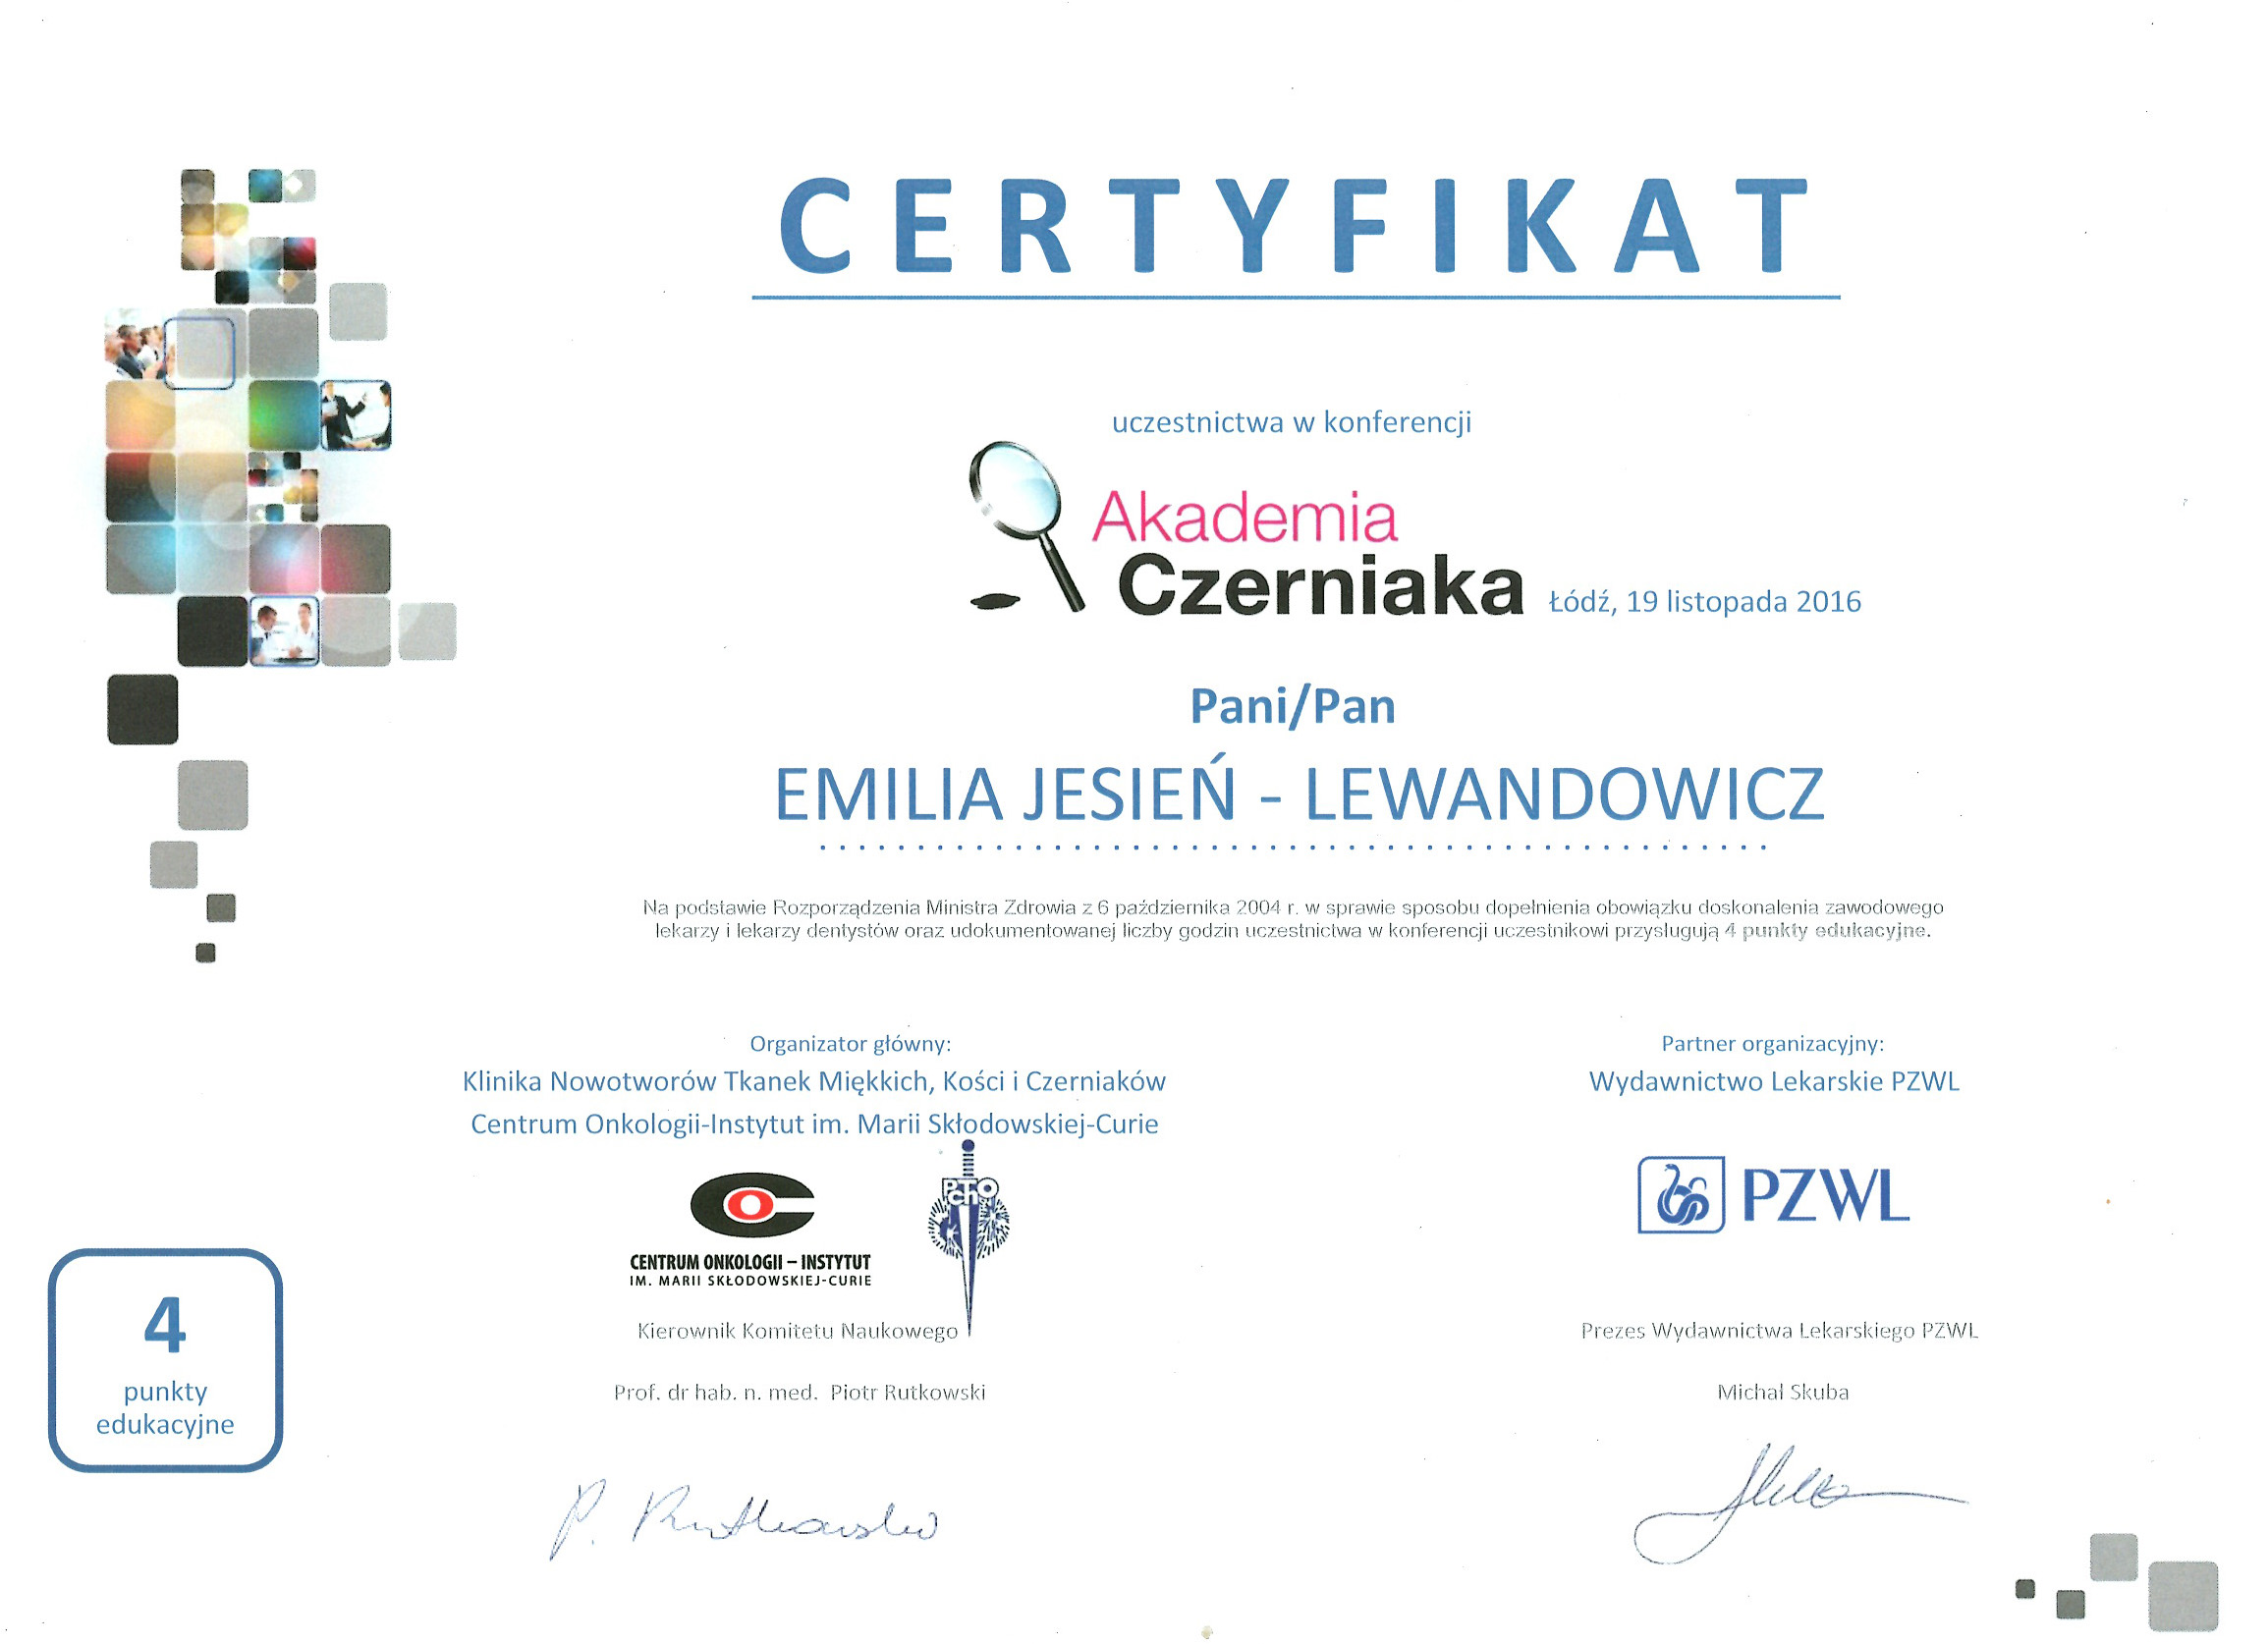 Cert AkadCzerniaka 11.2016 - dr n. med. Emilia Jesień-Lewandowicz